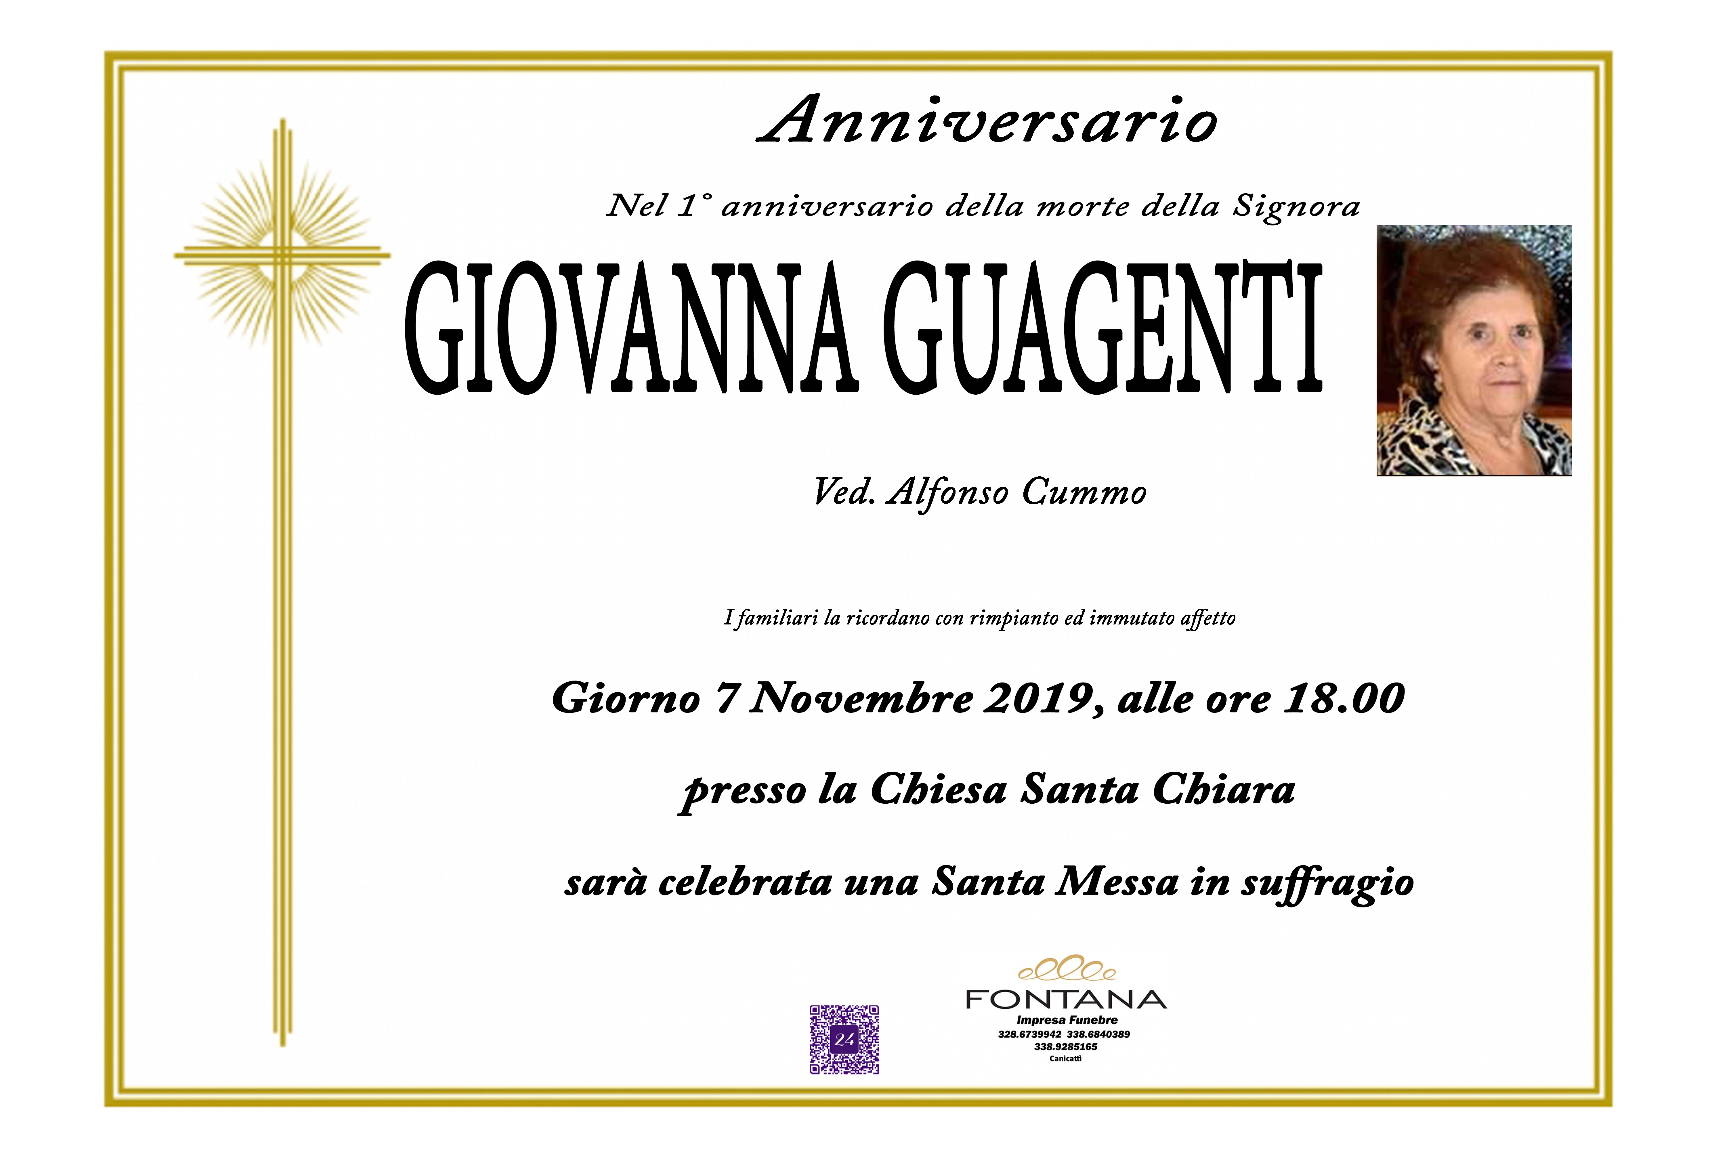 Giovanna Guagenti